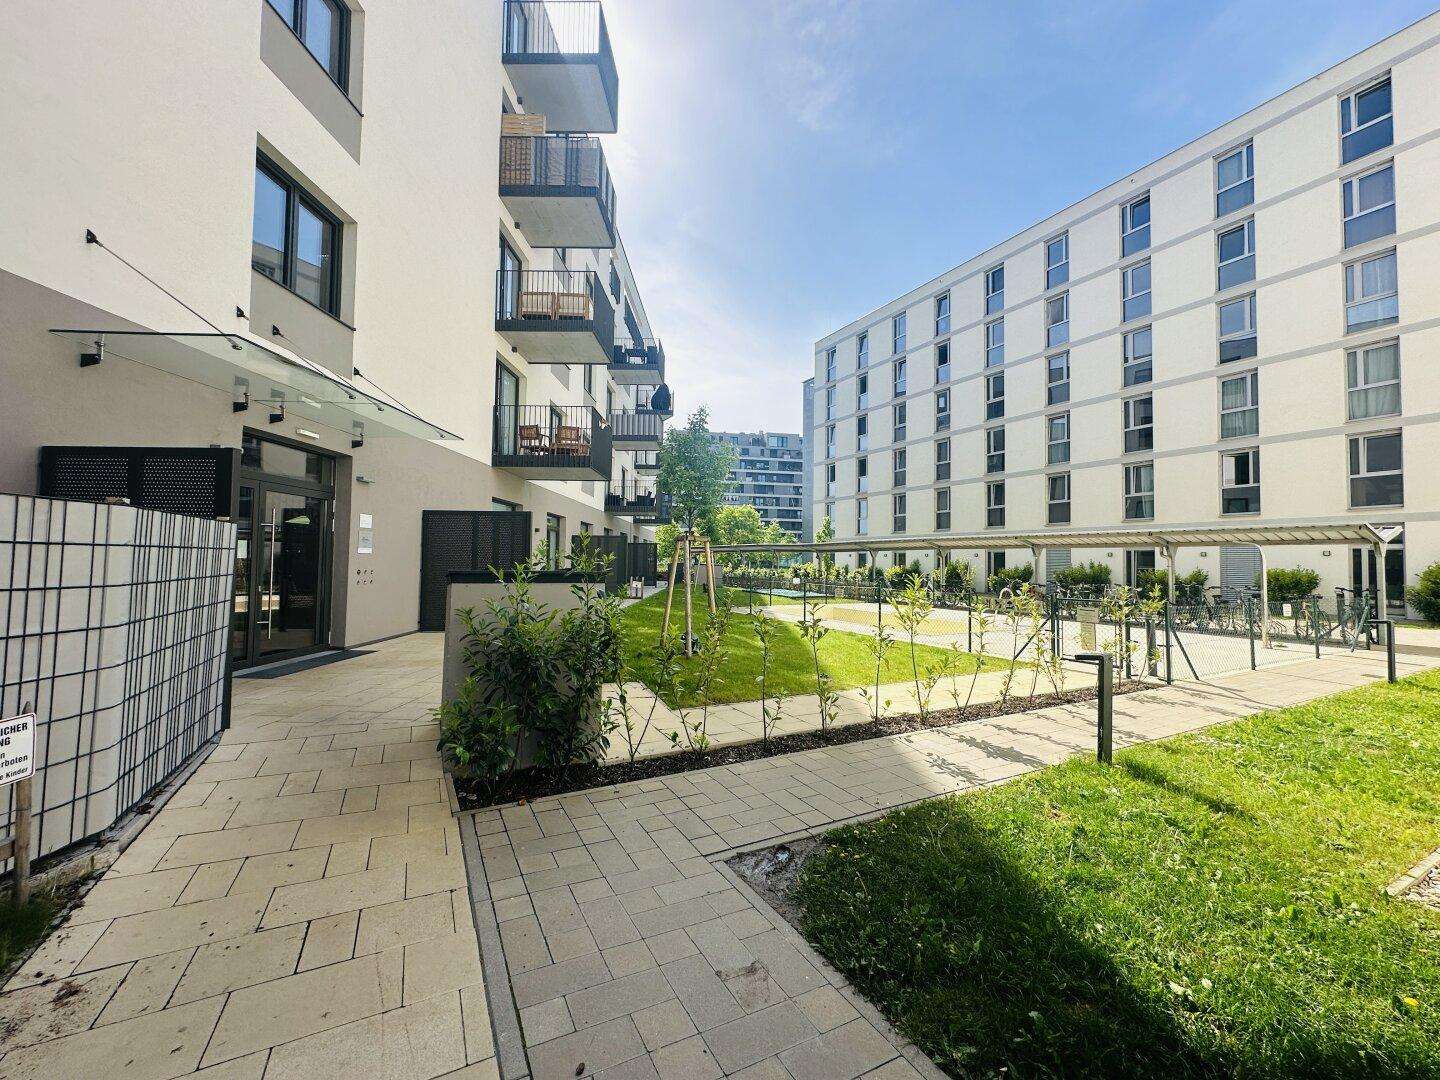 Gemütliche 2 Zimmerwohnung + Balkon! Top Lage - sehr nahe dem Hauptbahnhof & Belvedere! Ubahn Nähe!